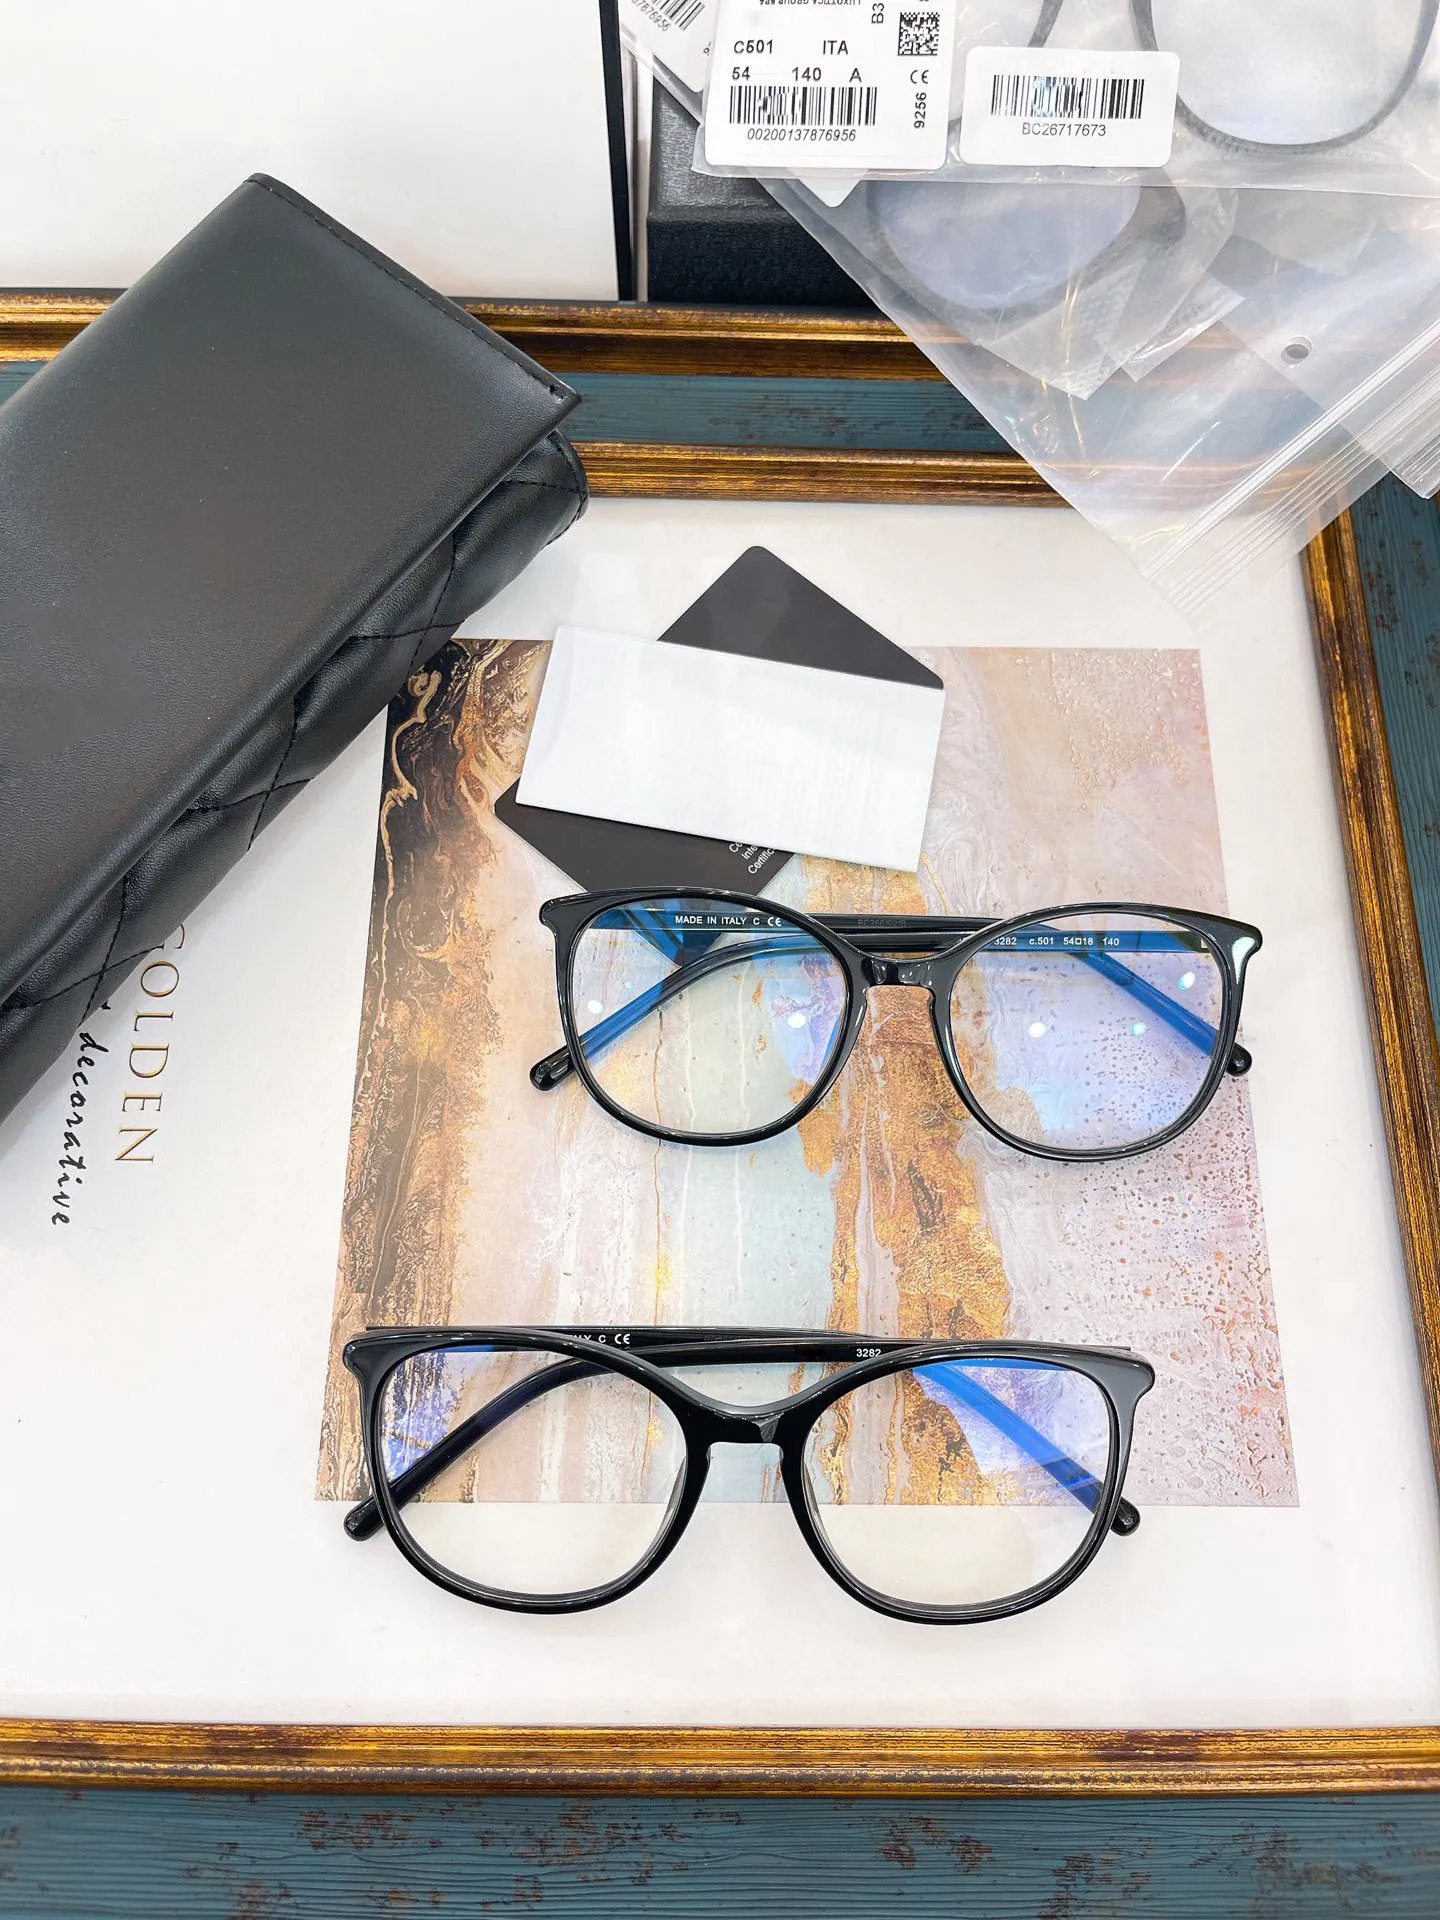 Männer und Frauen Augenbrillen Frames Brillen Rahmen klare Linsenmenschen Damen 3282 Neueste zufällige Box